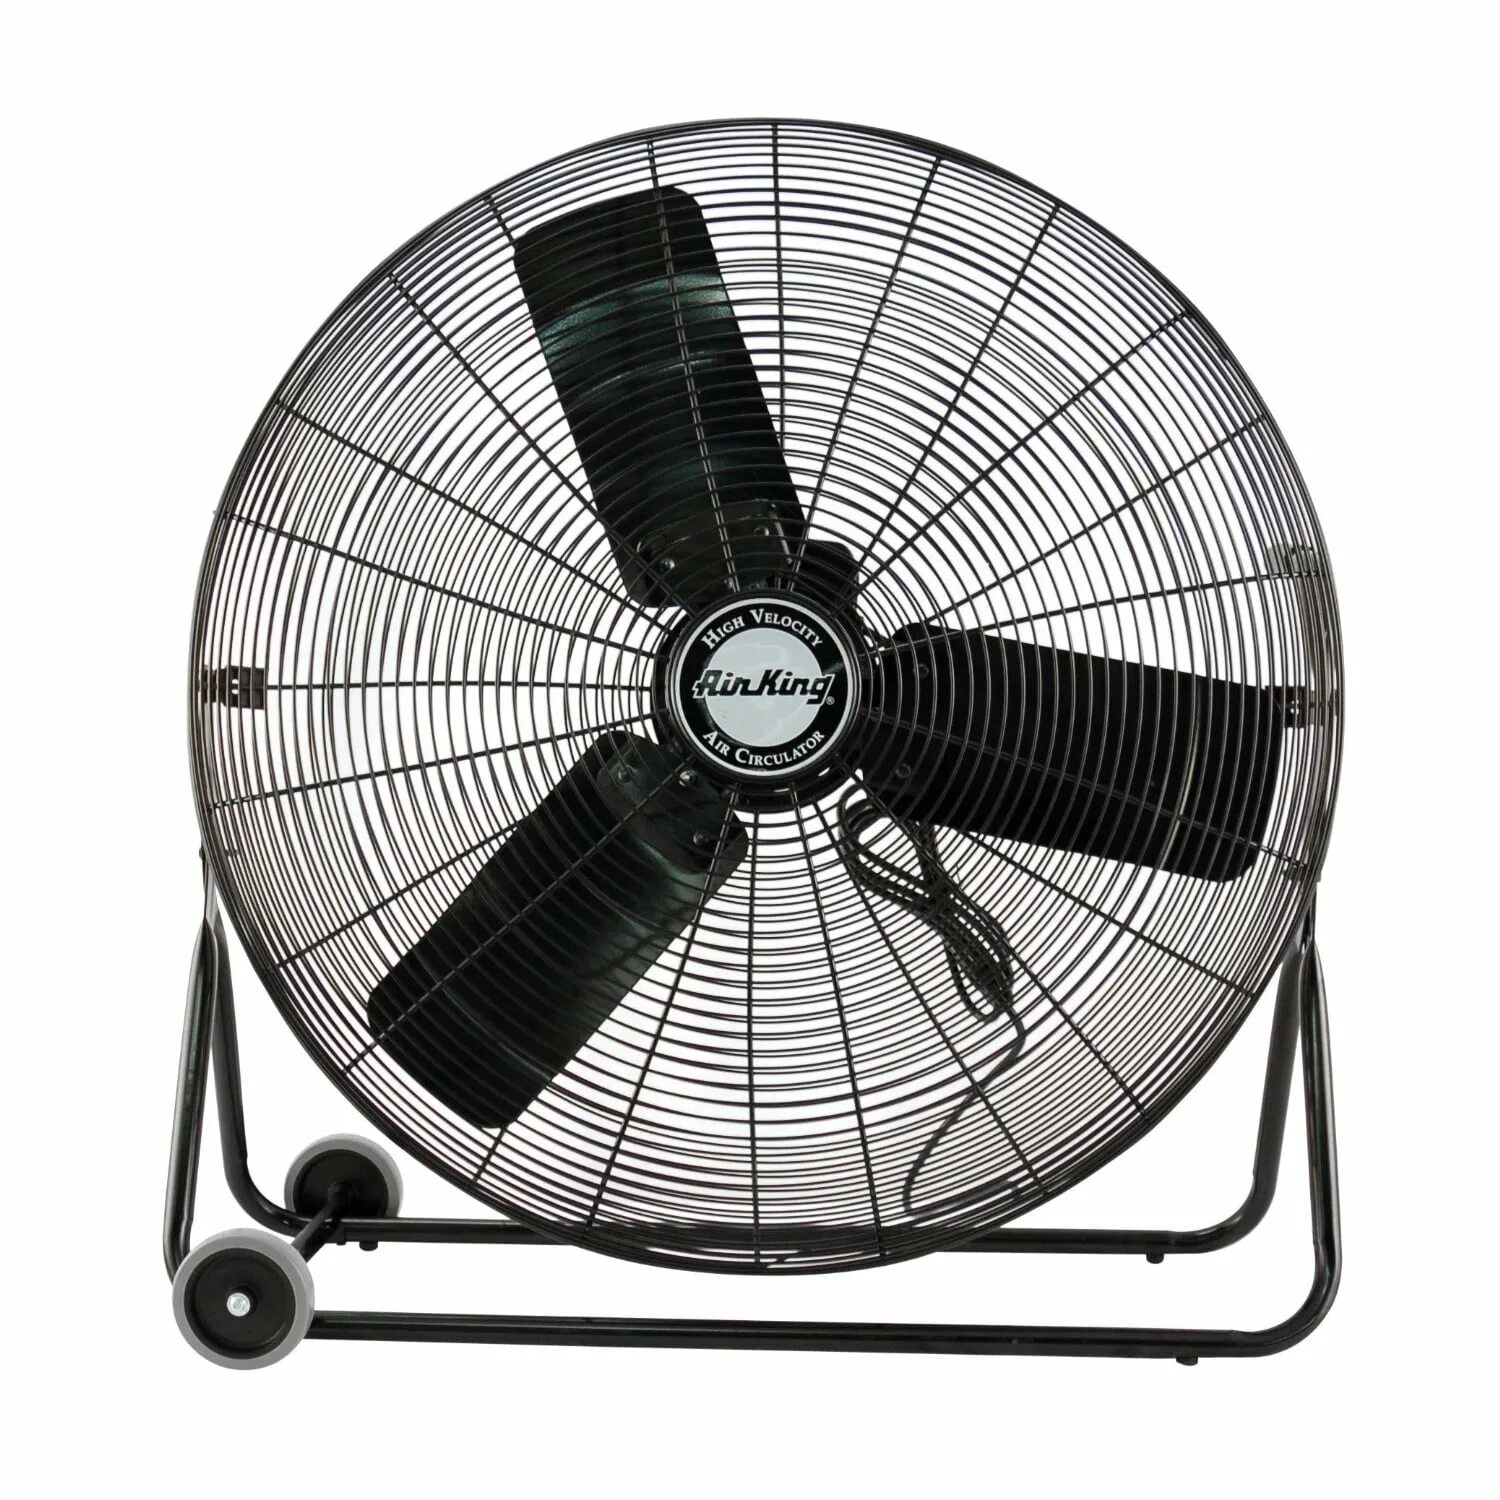 Fan n. Вентилятор напольный Changli Crown 16 Stand Fan. Вентилятор Duofa Industrial. Вентилятор Brando FS-4521 Темир. Промышленный вентилятор на колесах.